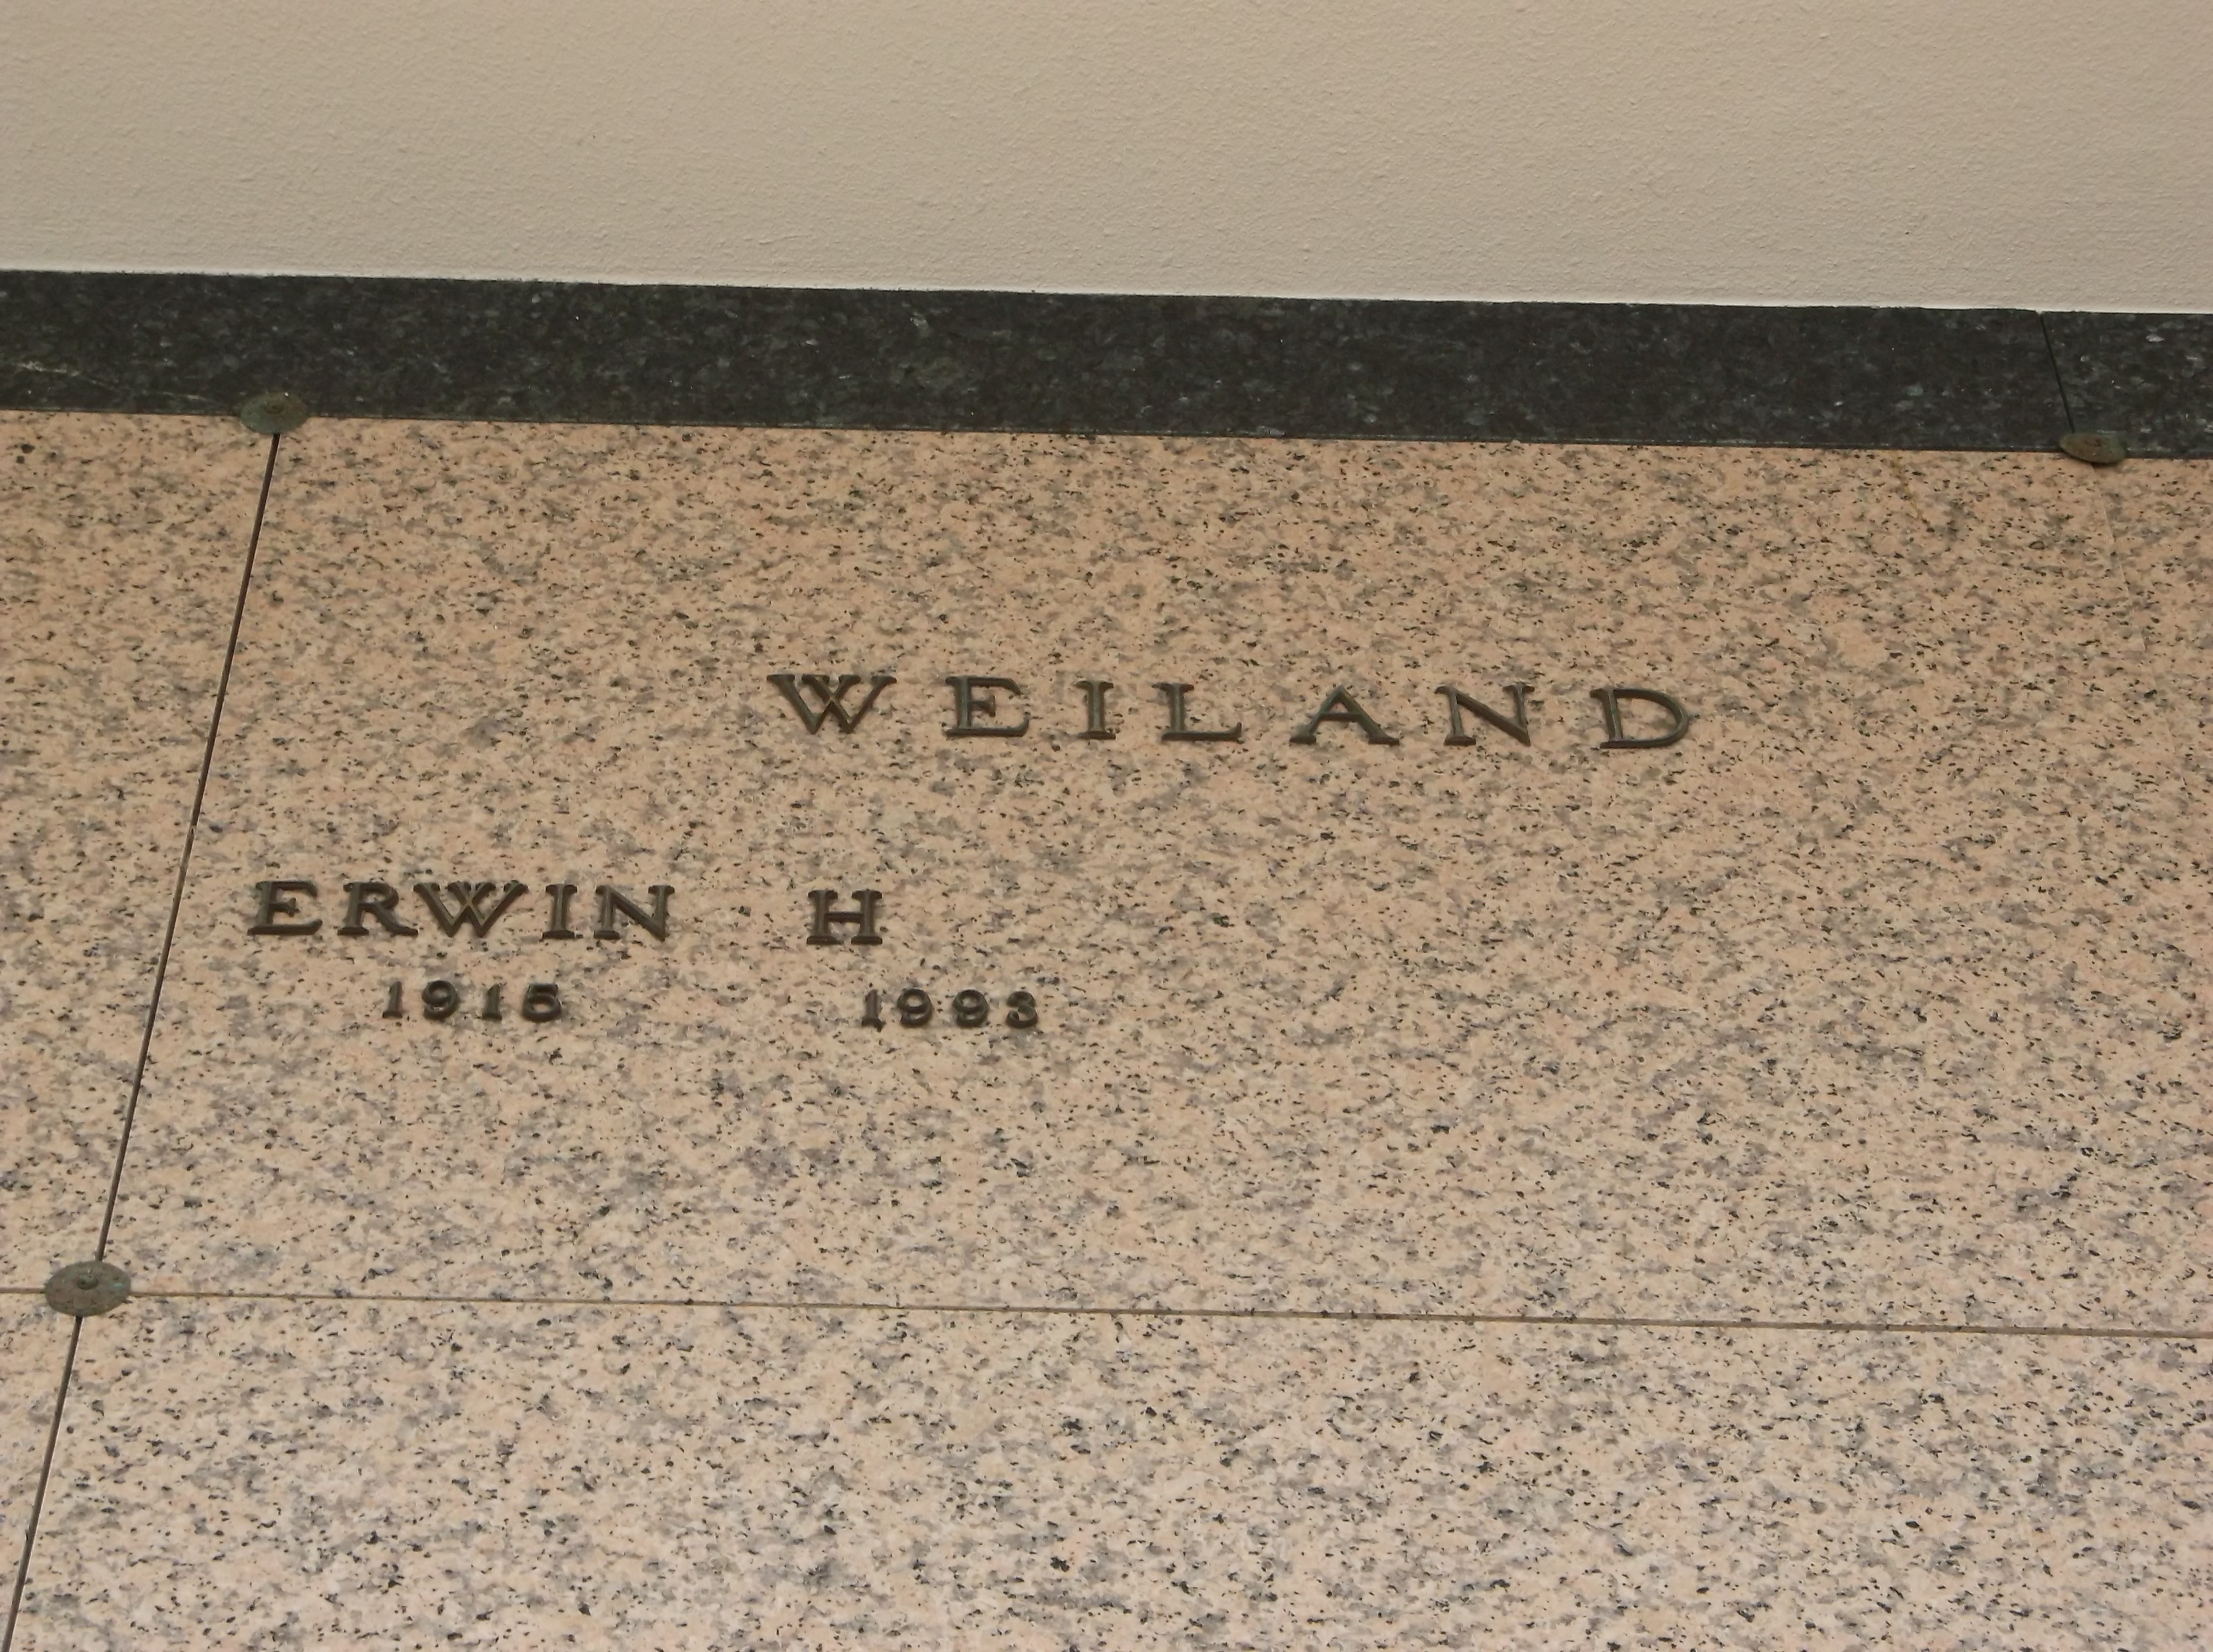 Erwin H Weiland